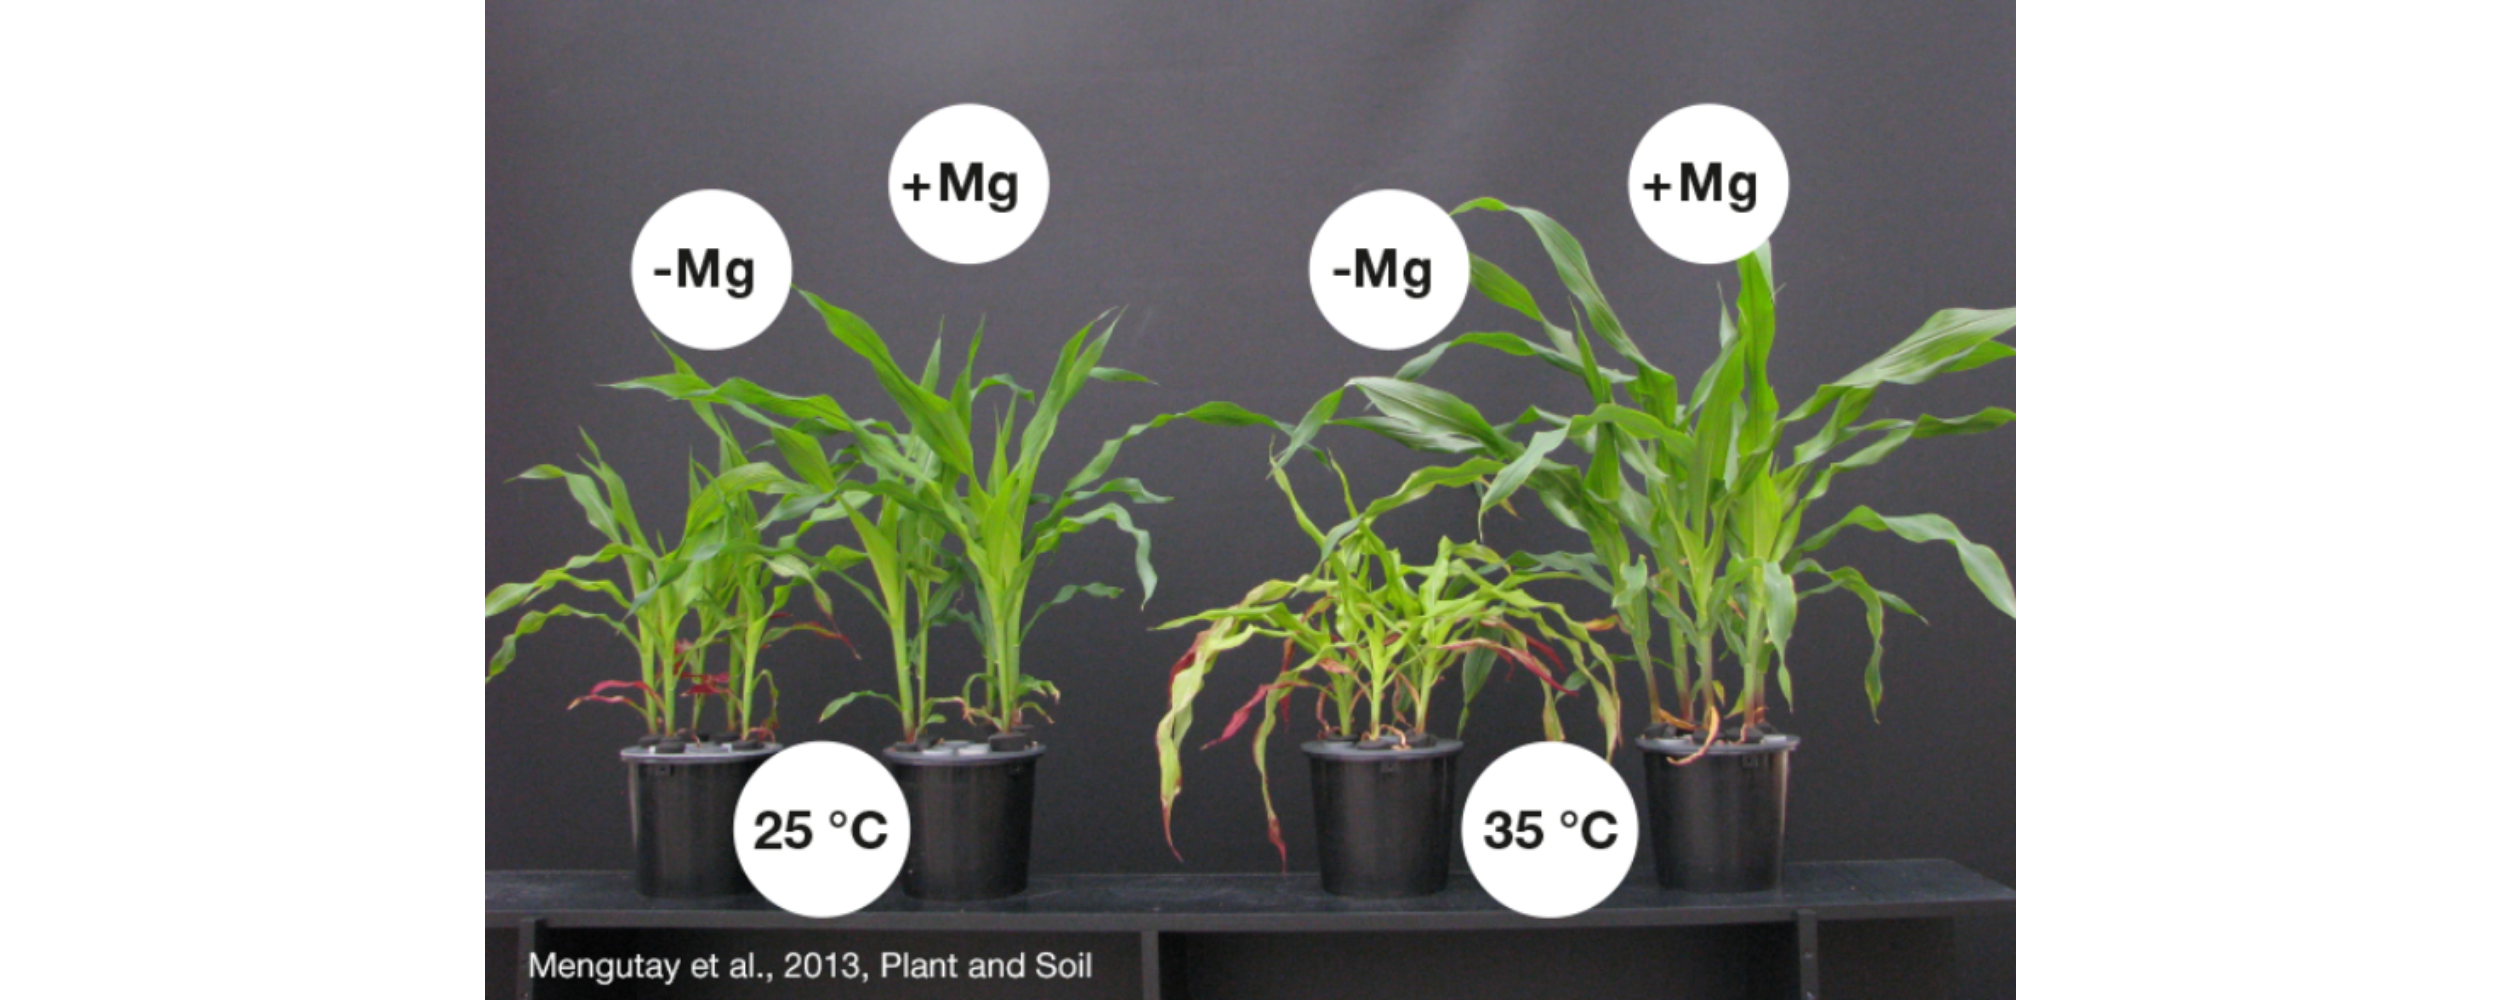 Die Maispflanze mit Magnesiummangel (-Mg) bleibt in ihrer Entwicklung gegenüber der gut mit Magnesium versorgten Pflanze (+Mg) zurück. Bei hohen Temperaturen von 35°C verstärkt sich der Effekt.